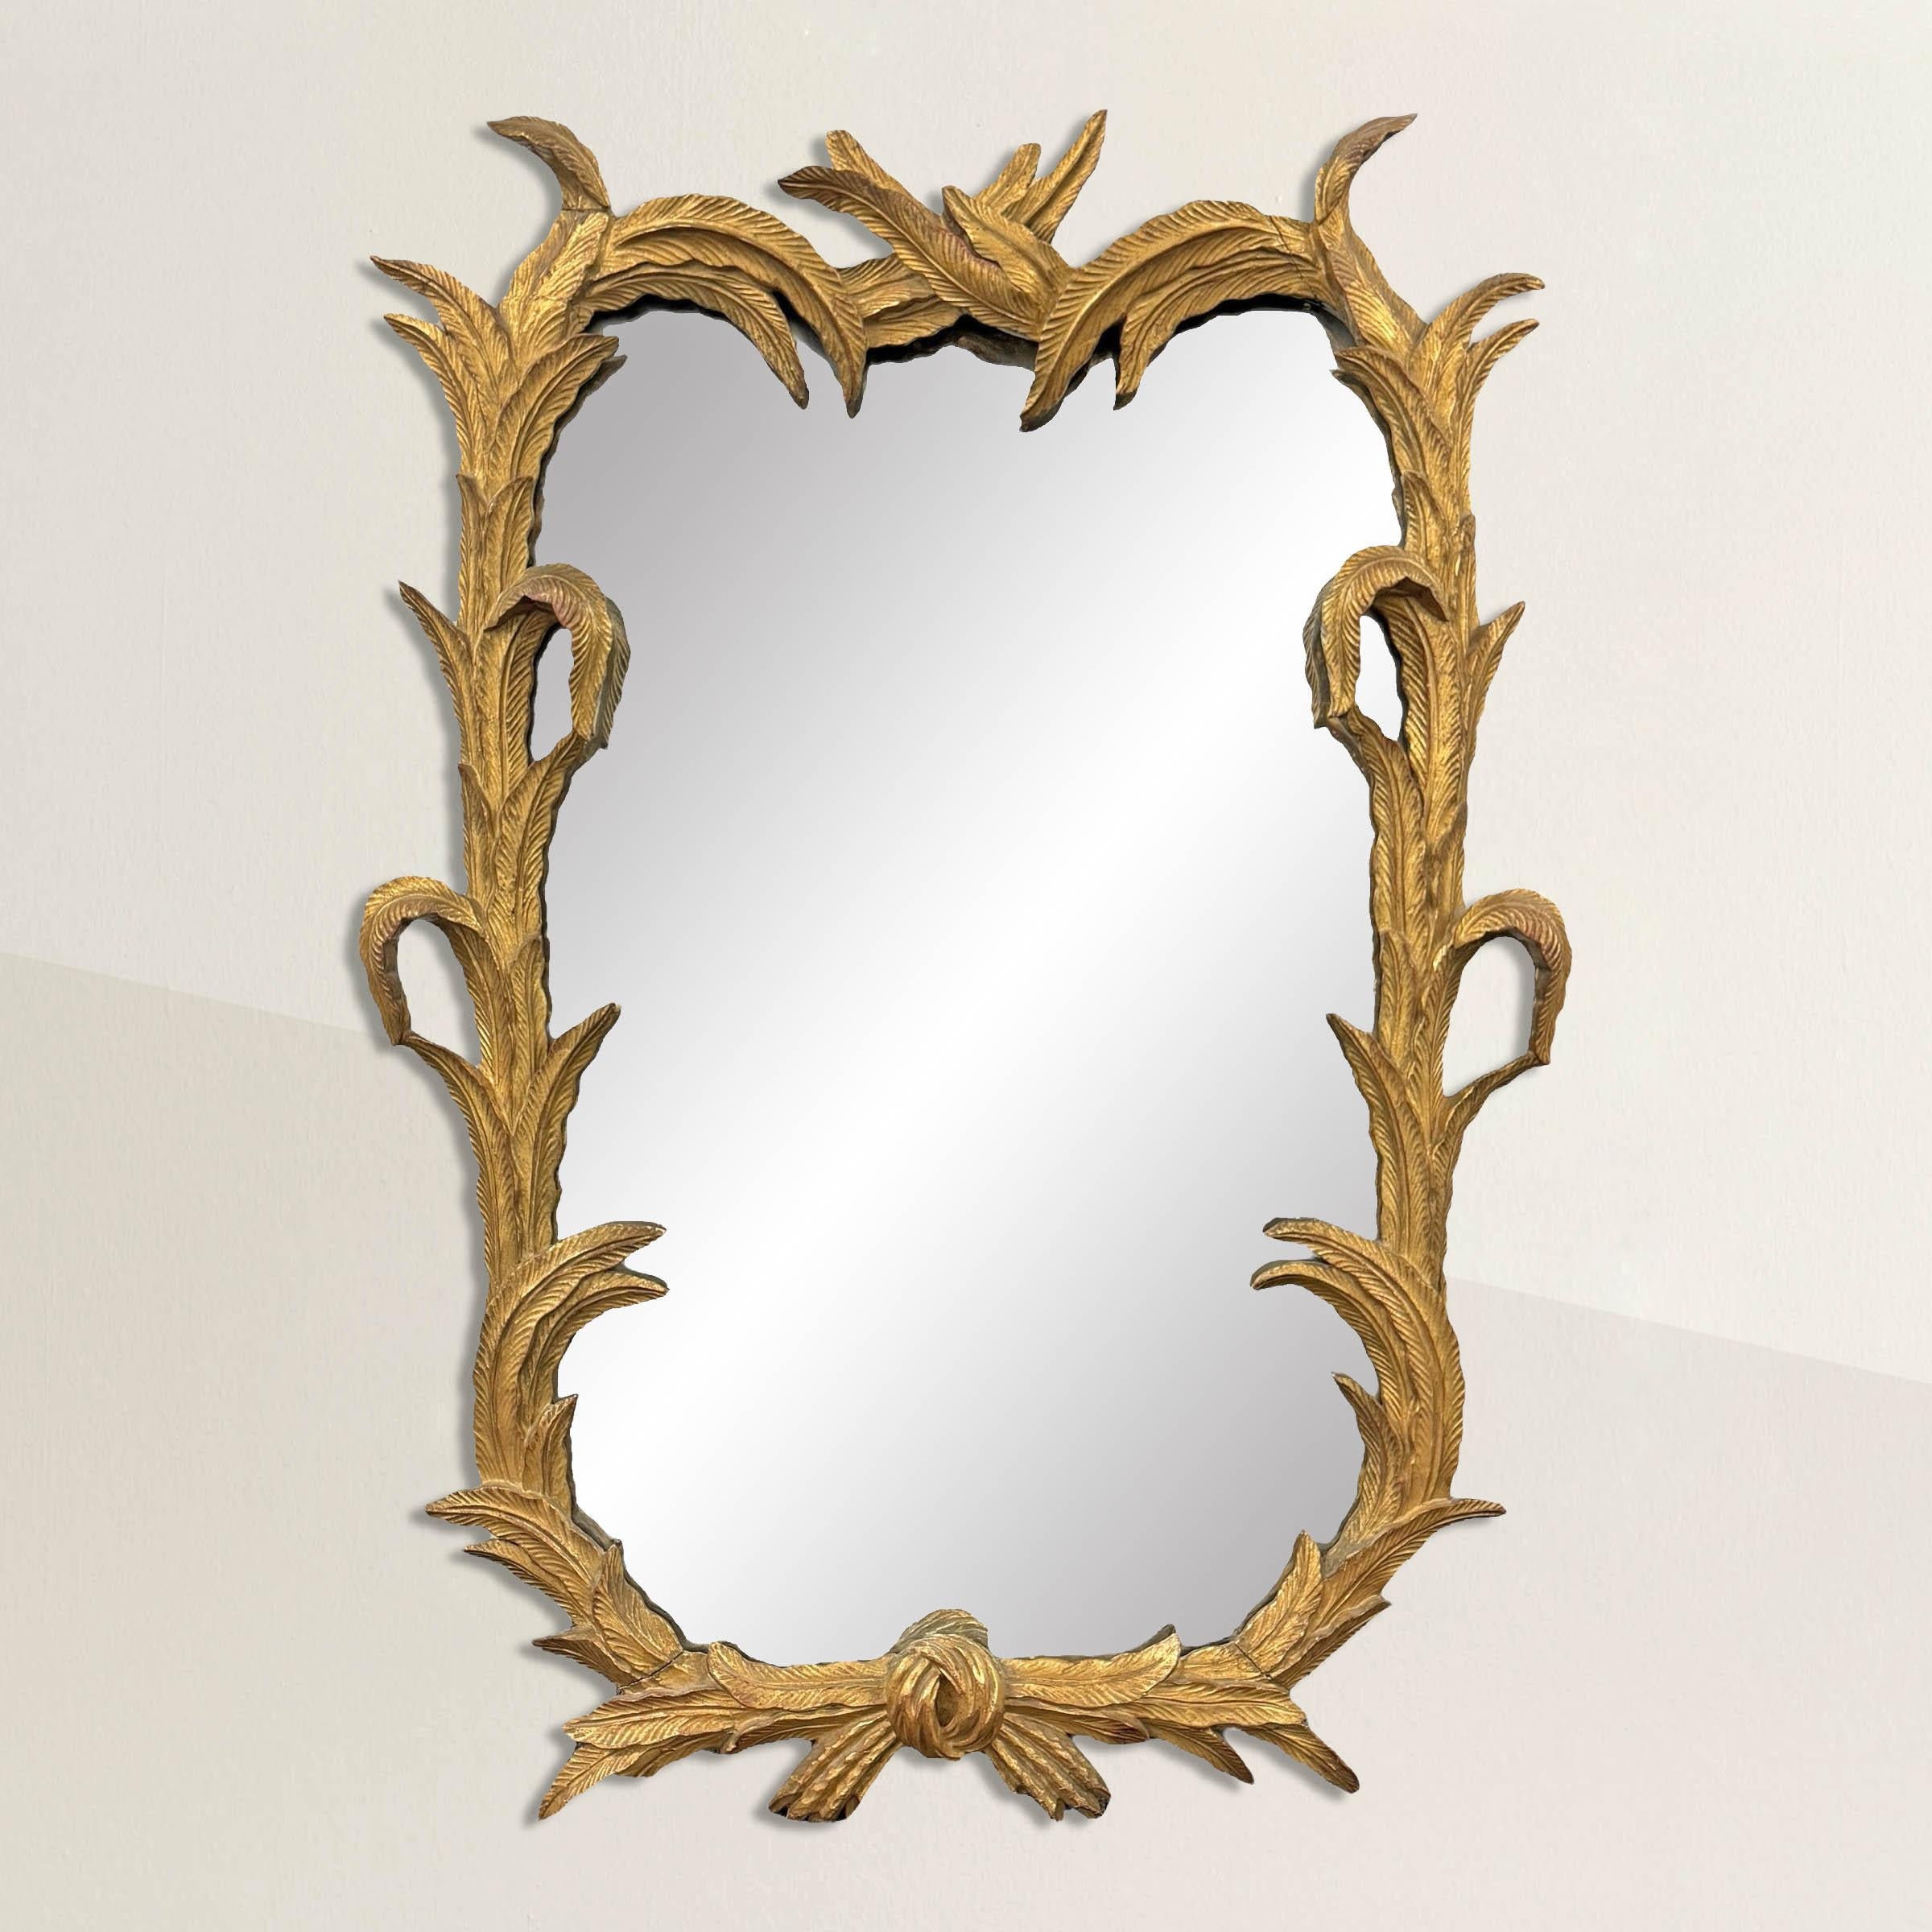 Ce miroir italien du début du XXe siècle, encadré de bois sculpté et doré, est un chef-d'œuvre de l'artisanat, doté d'un design complexe et enchanteur. Le cadre est une symphonie de détails, avec des dizaines de plumes stylisées méticuleusement